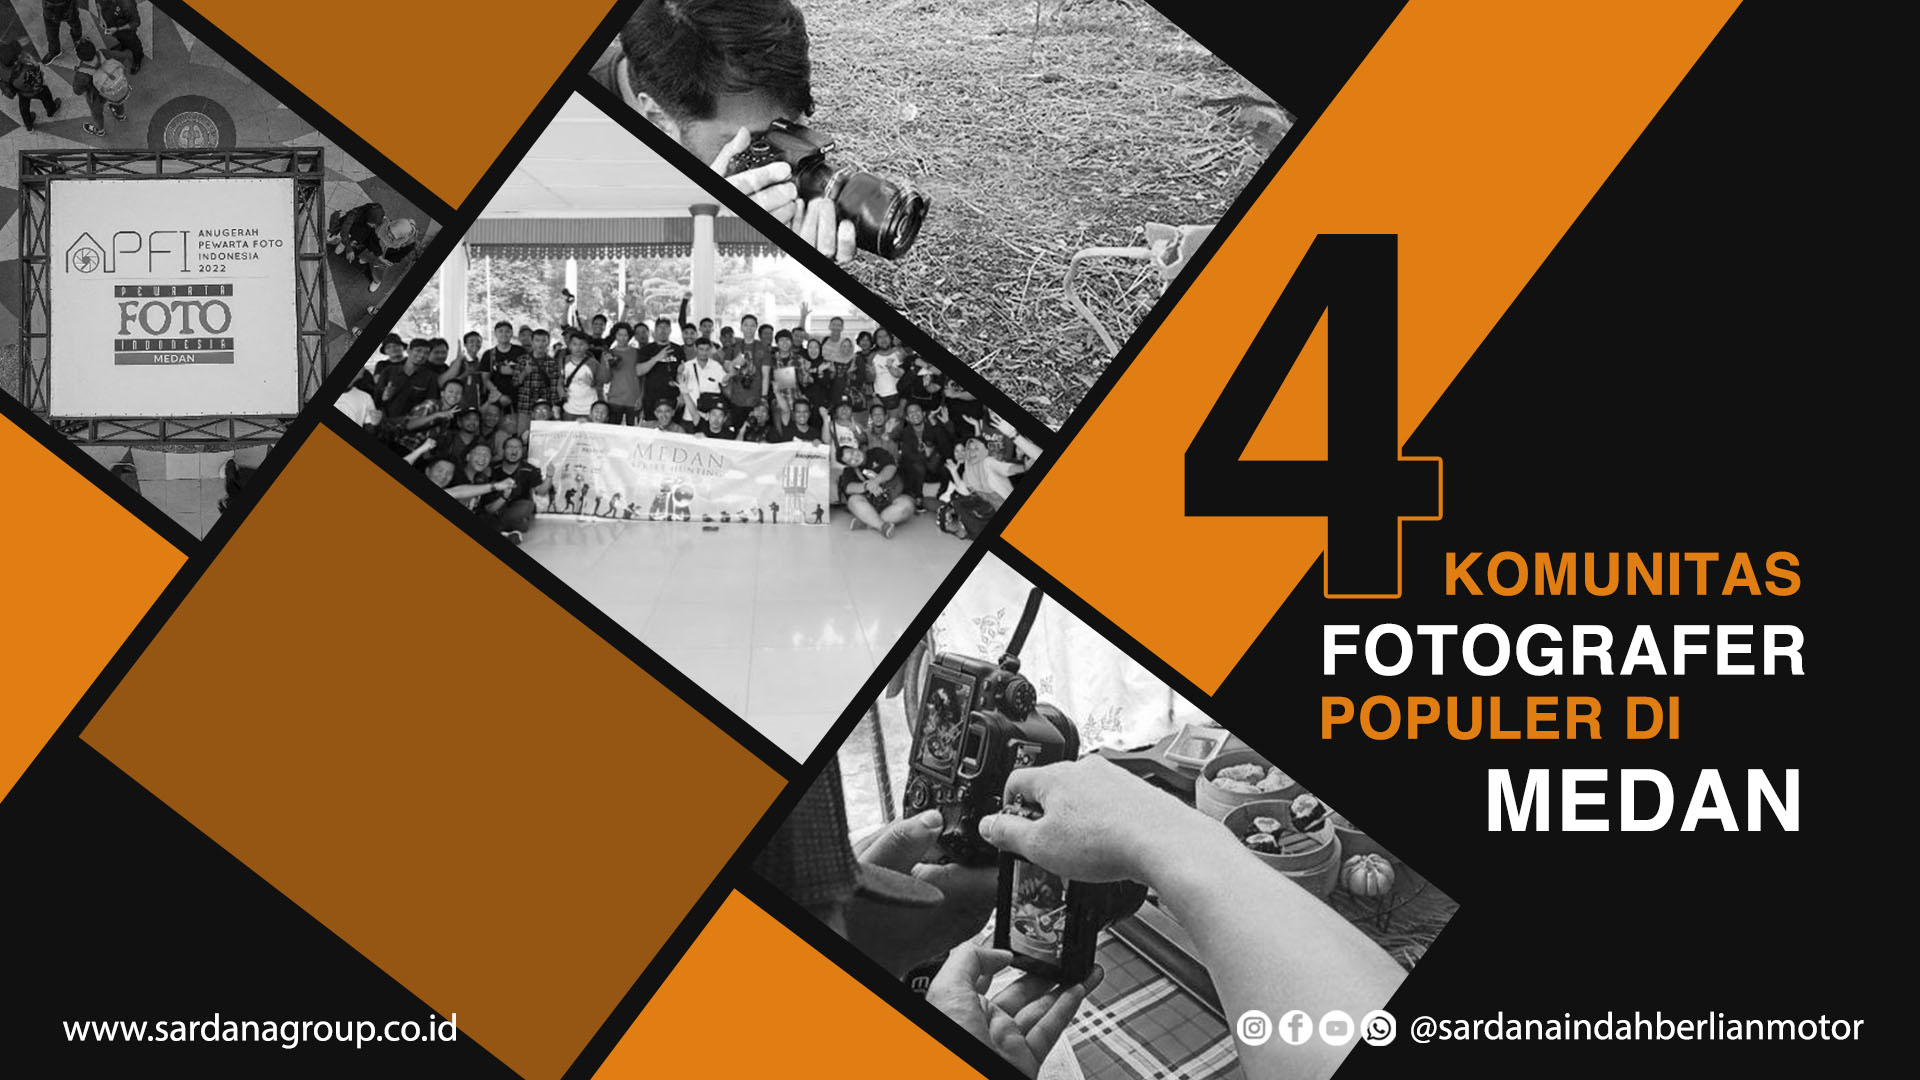 Empat Komunitas Fotografer Yang Populer di Kota Medan  